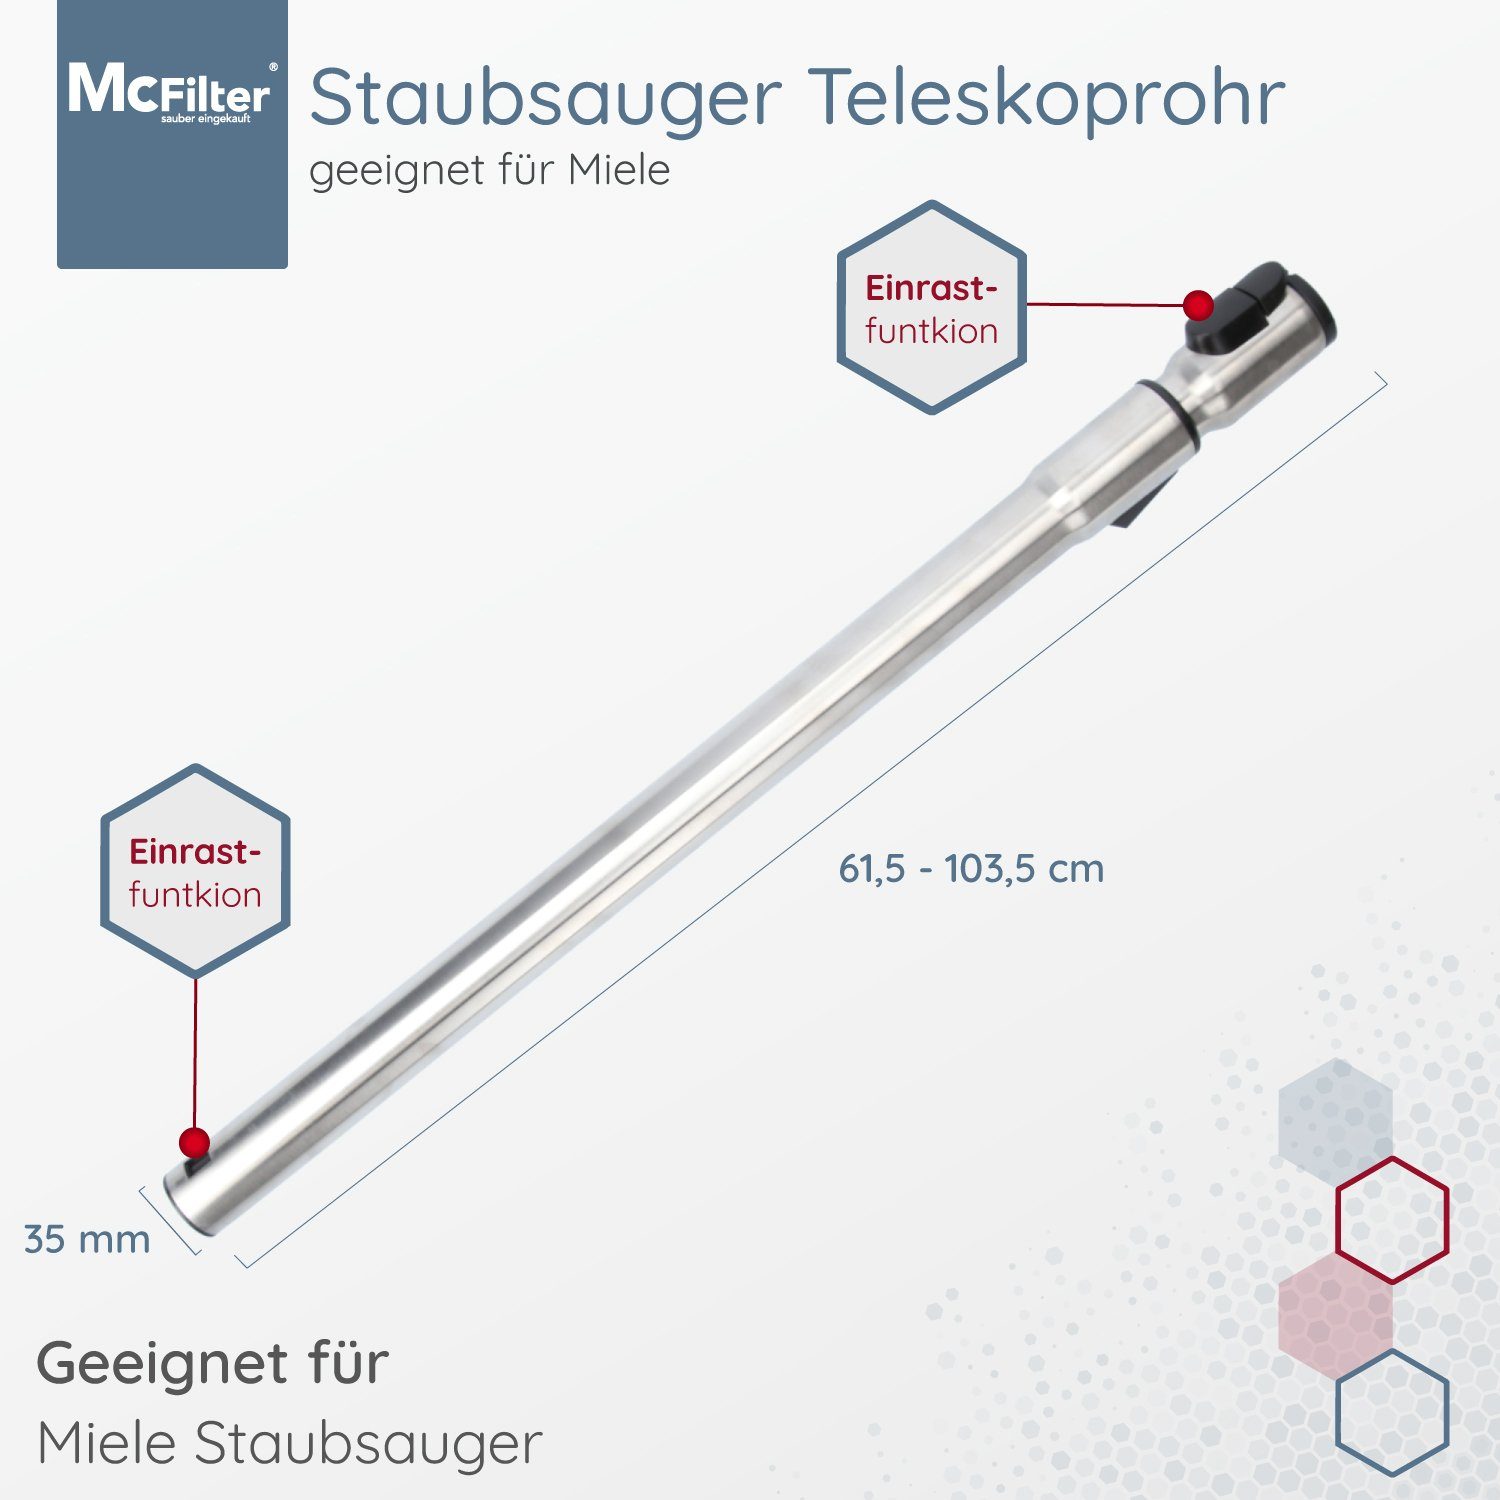 McFilter Teleskoprohr Saugrohr Rohr geeignet für Miele S381 und S711  Staubsauger, mit Anschluss Ø 35mm, Länge: ca. 61-103cm, mit Einrastsystem